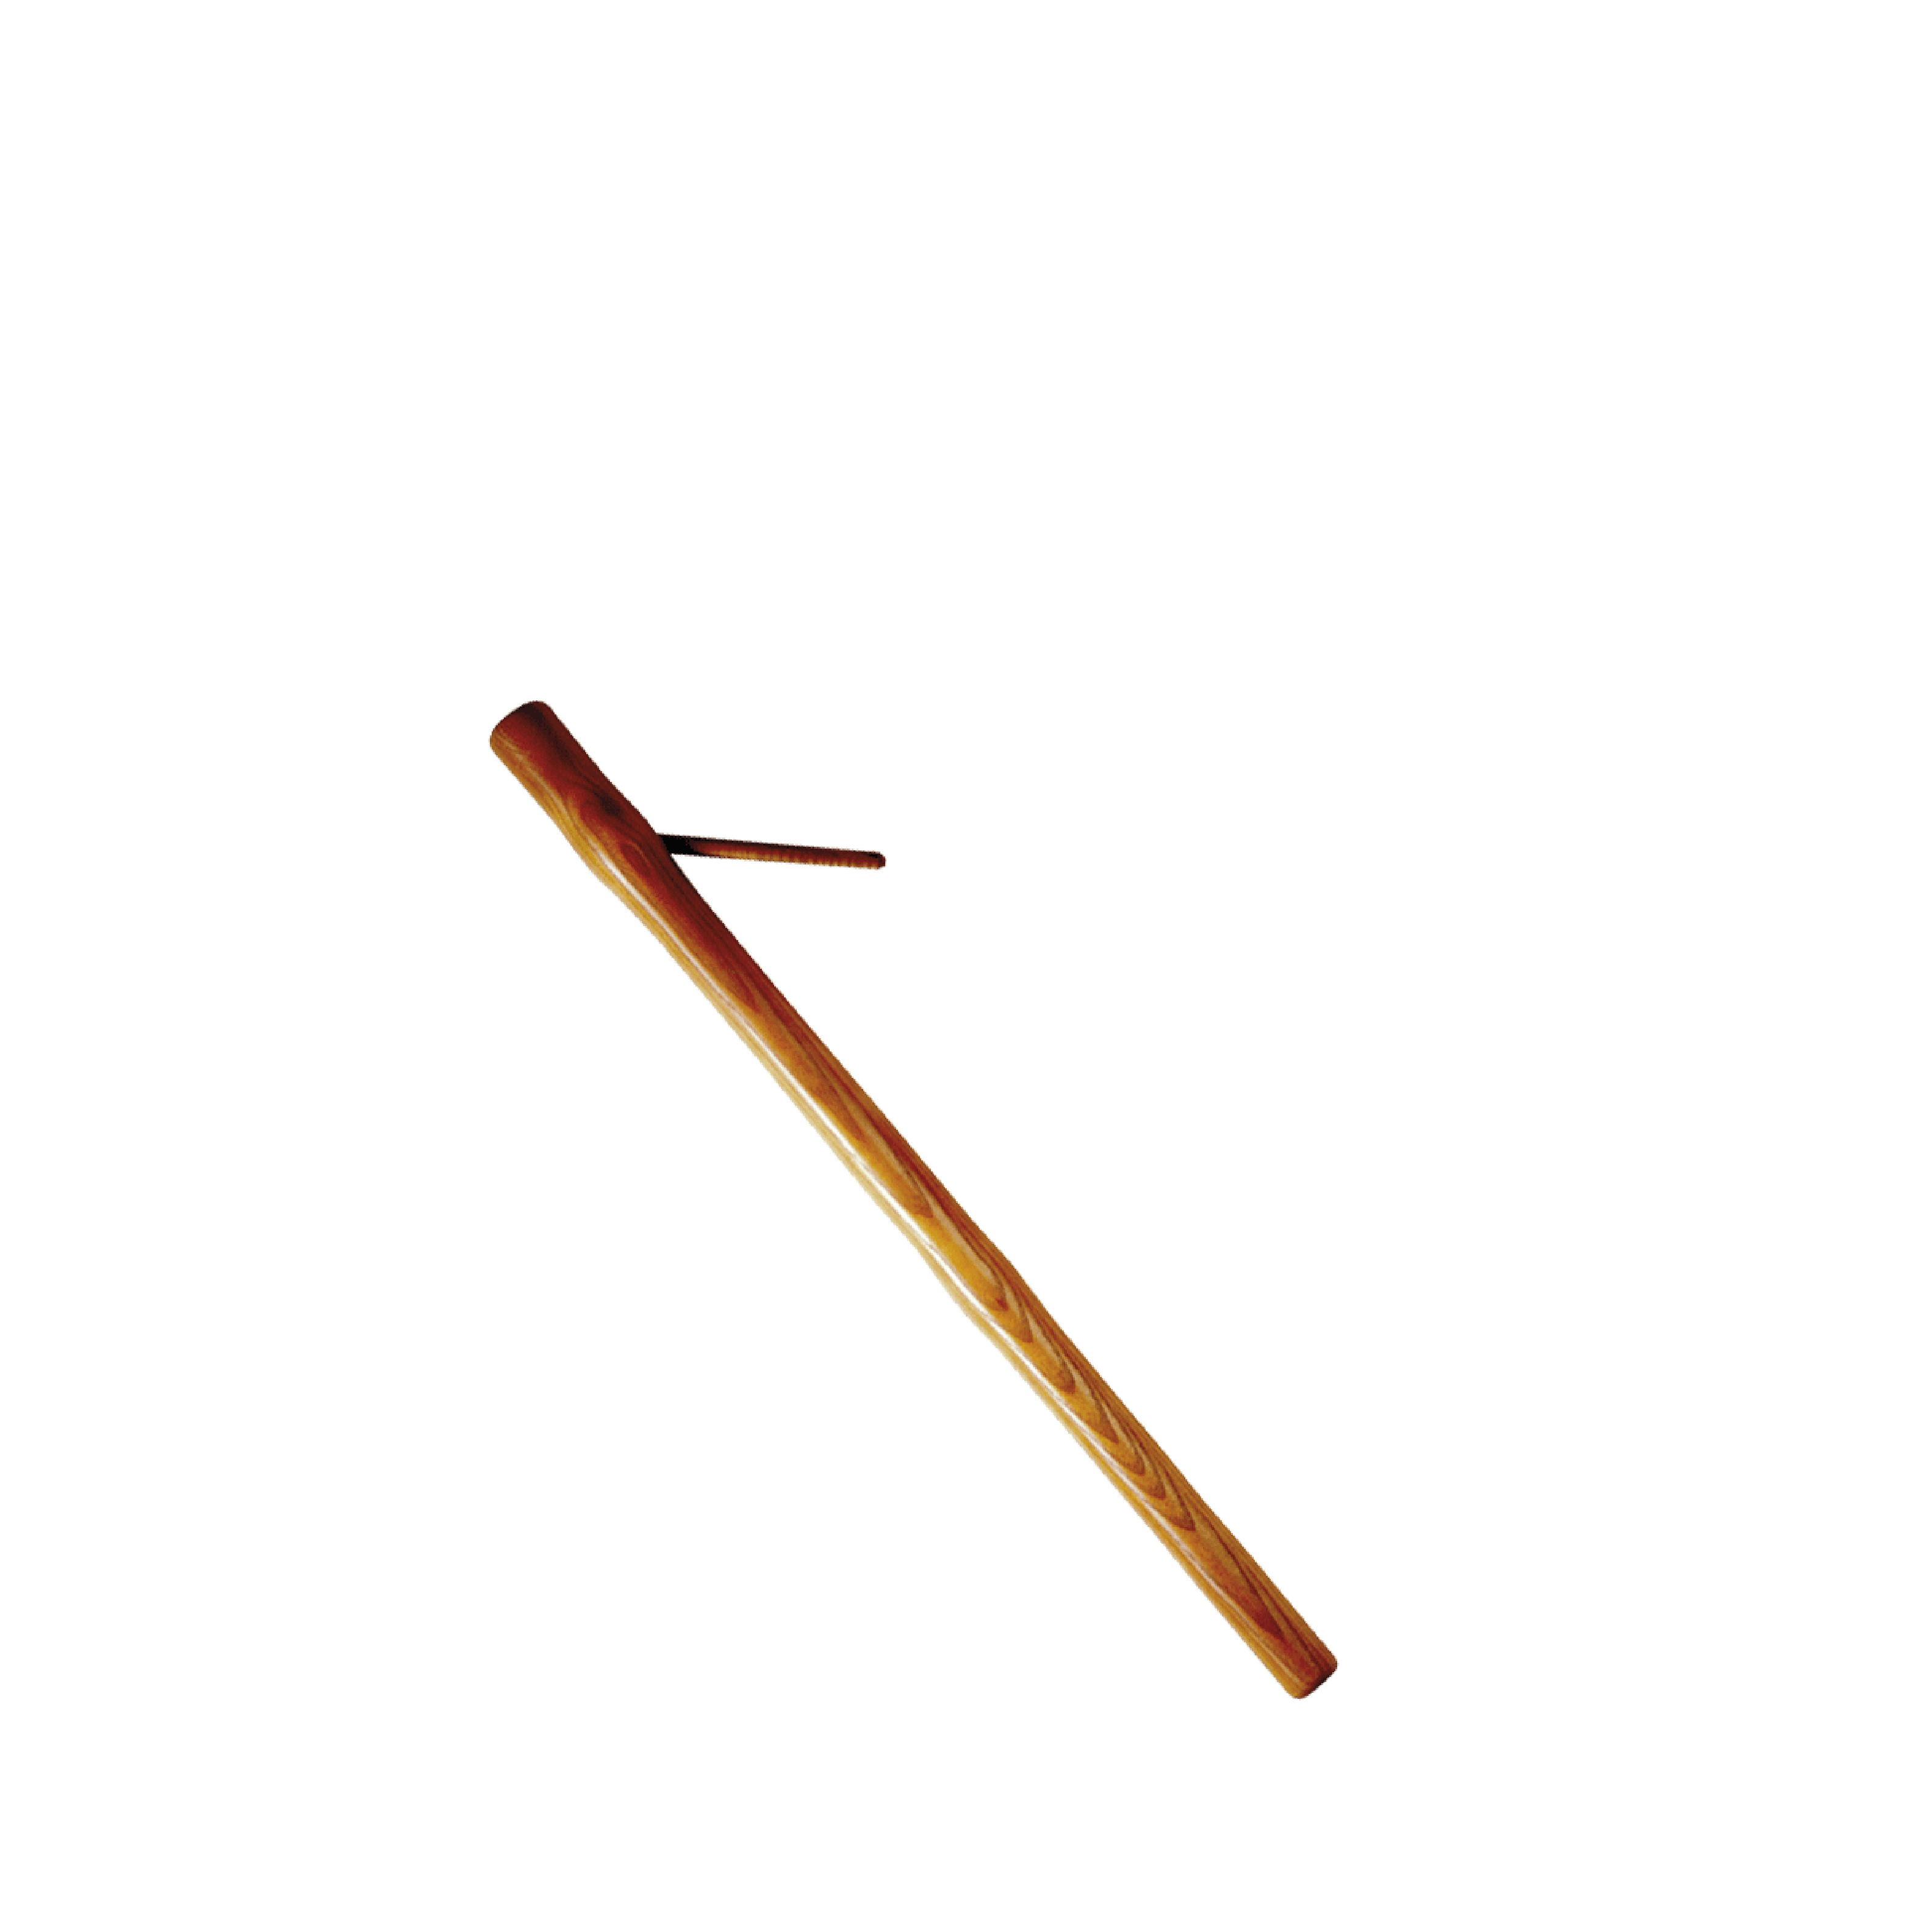 Le Bouffadou est un instrument traditionnel en bois (hêtre) pratique pour  attiser le feu. 